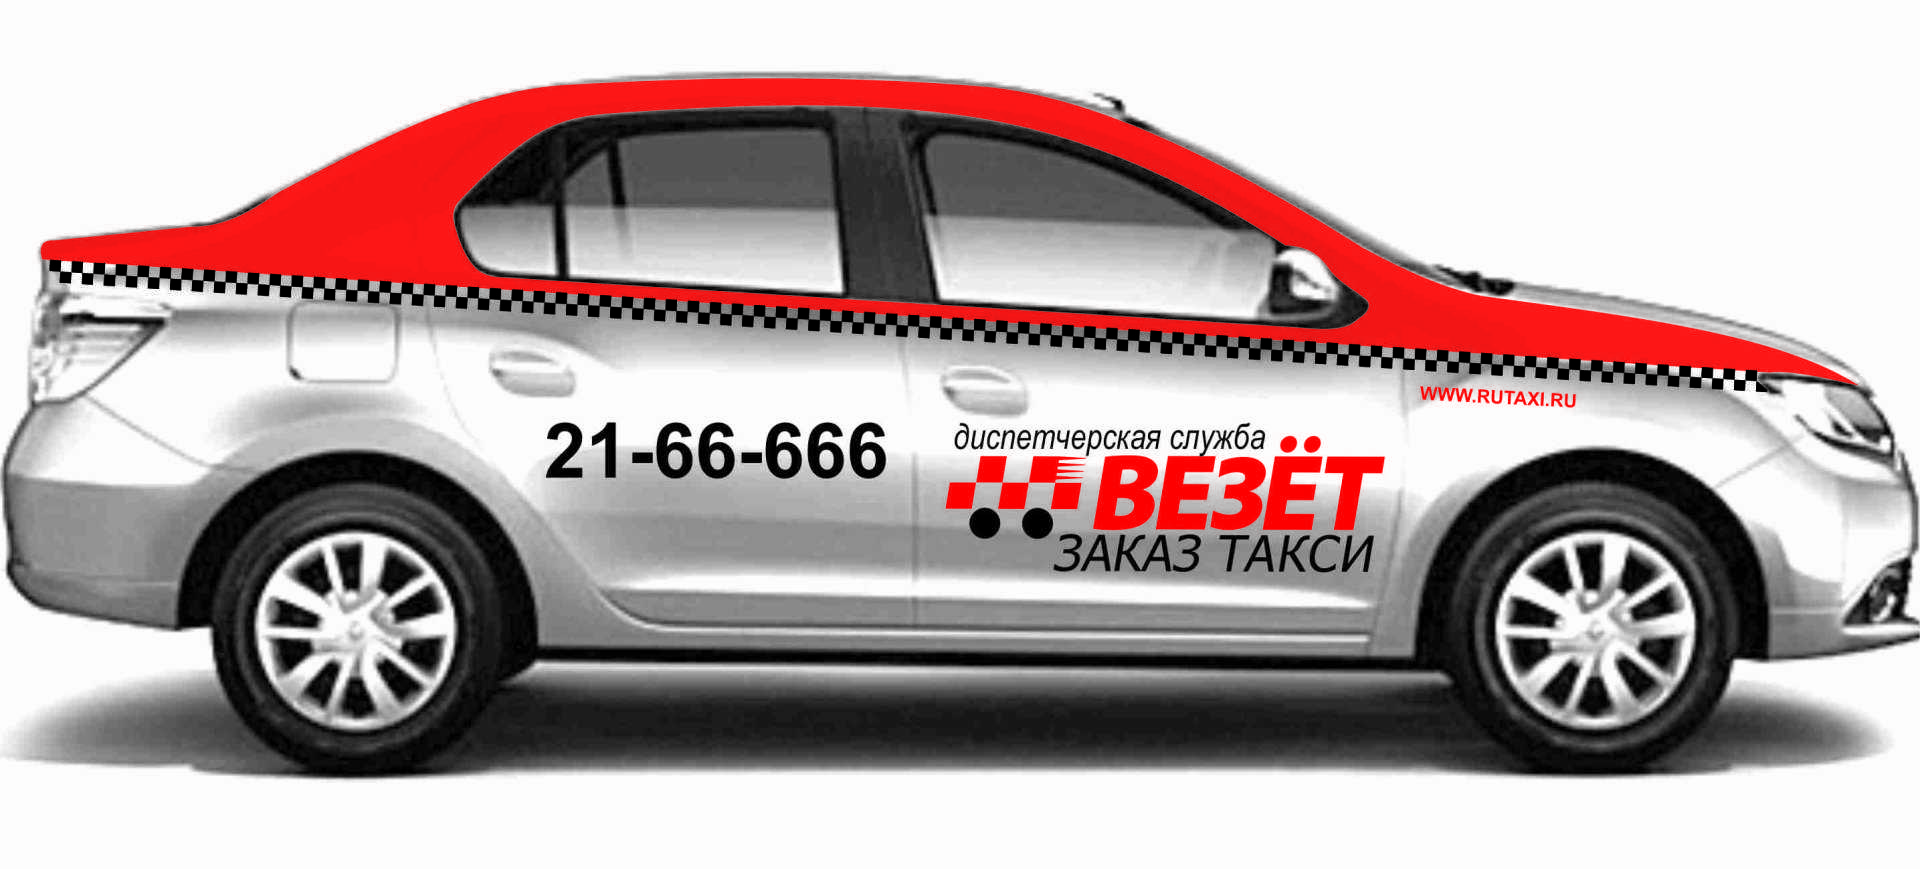 Такси заказать в краснодаре по телефону недорого. Такси везет Краснодар. Брендирование везет такси. Такси везет машины. Авто с наклейками везёт такси.